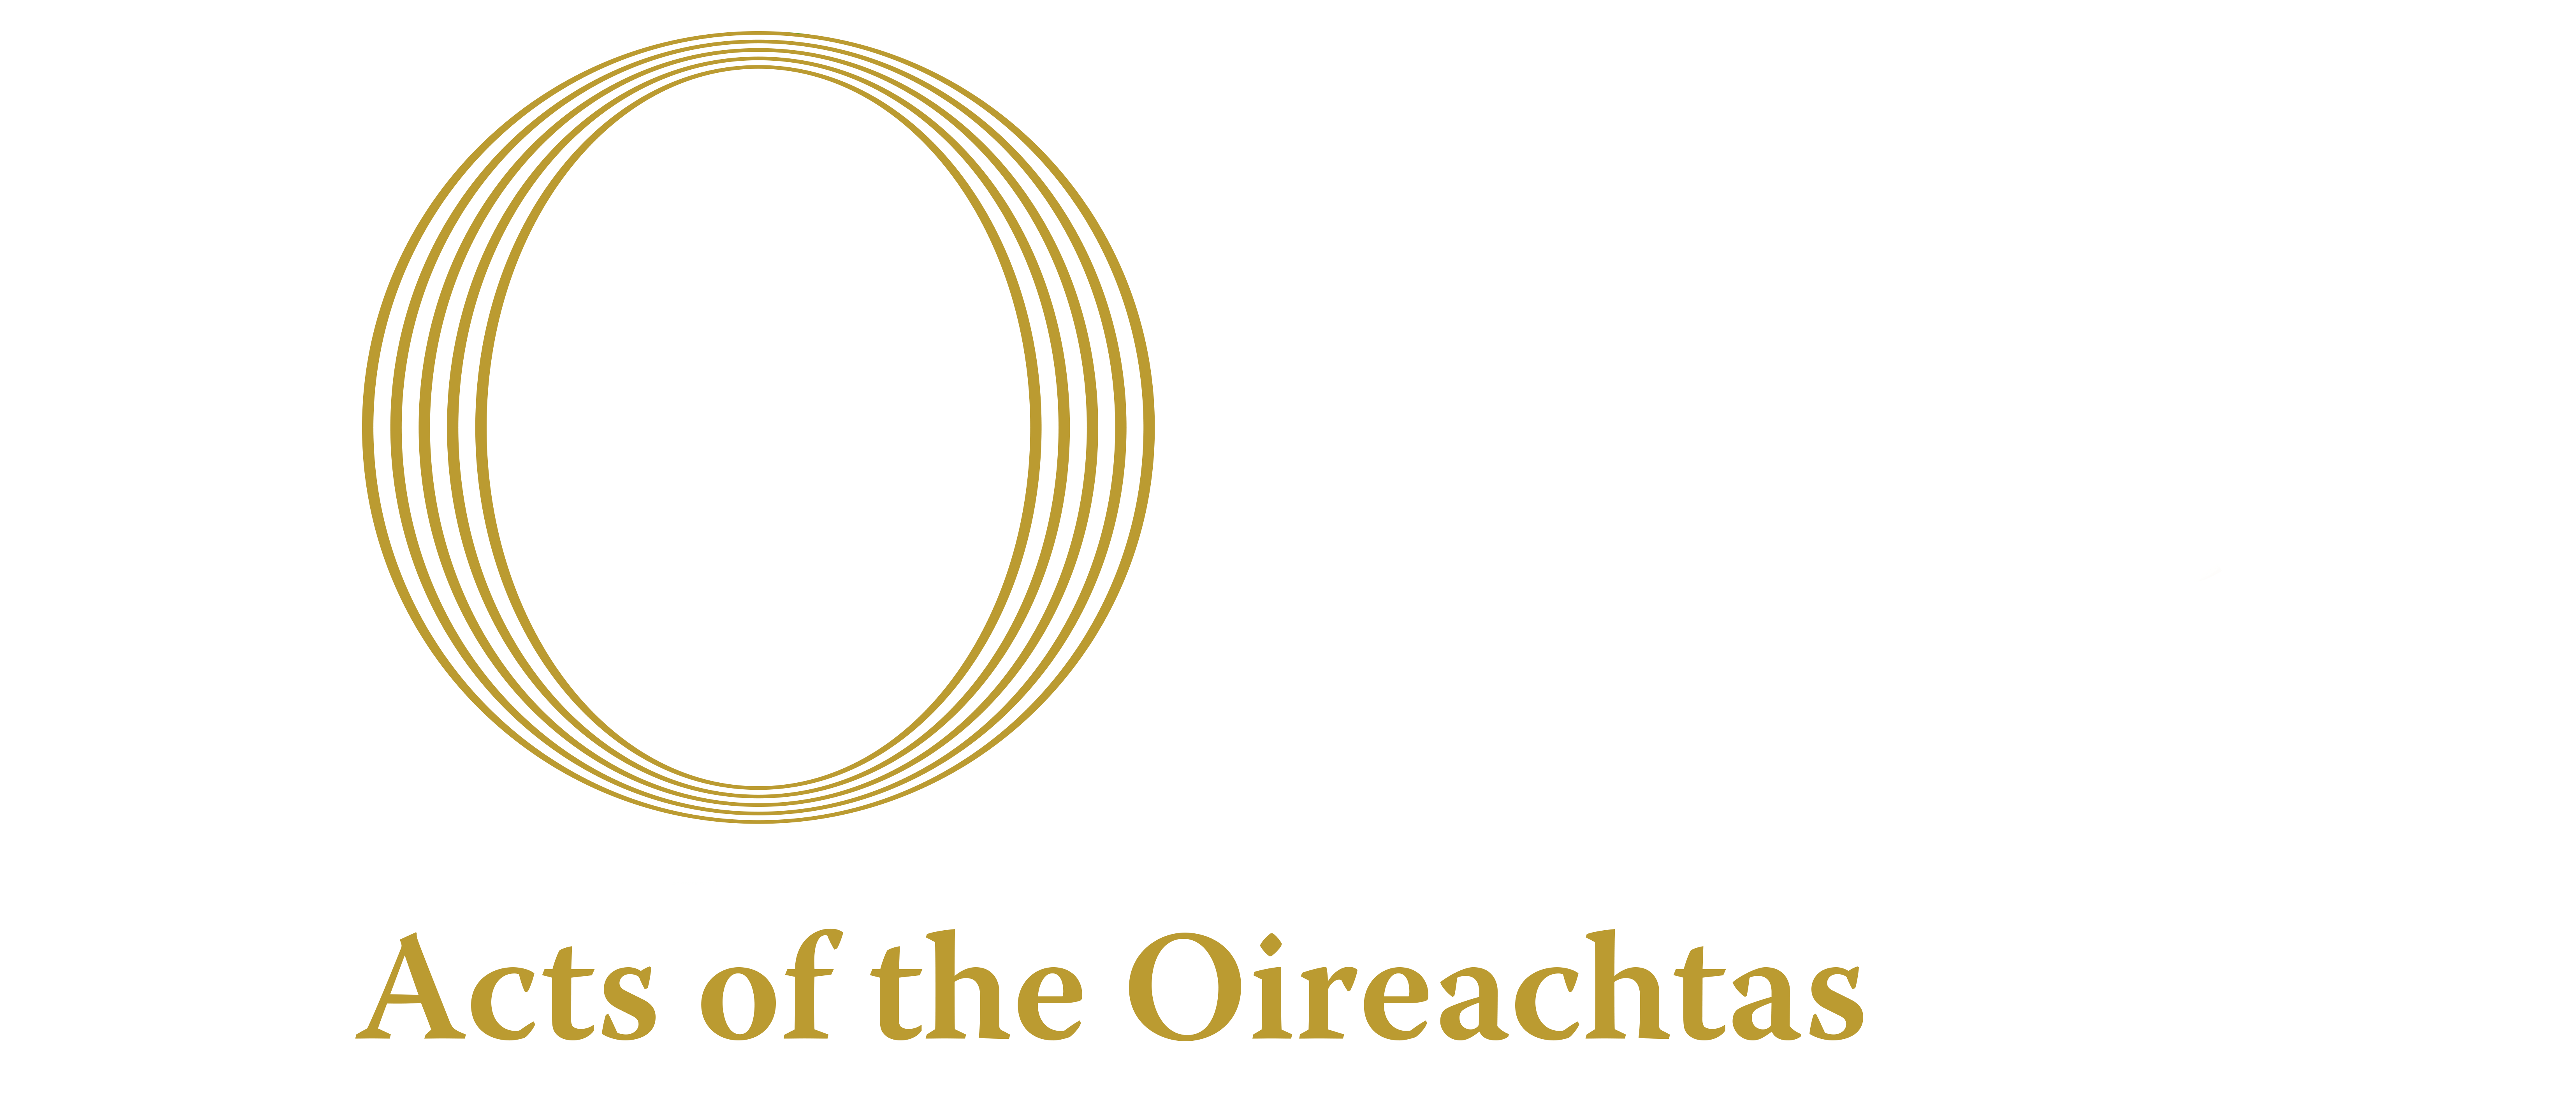 House of the Oireachtas